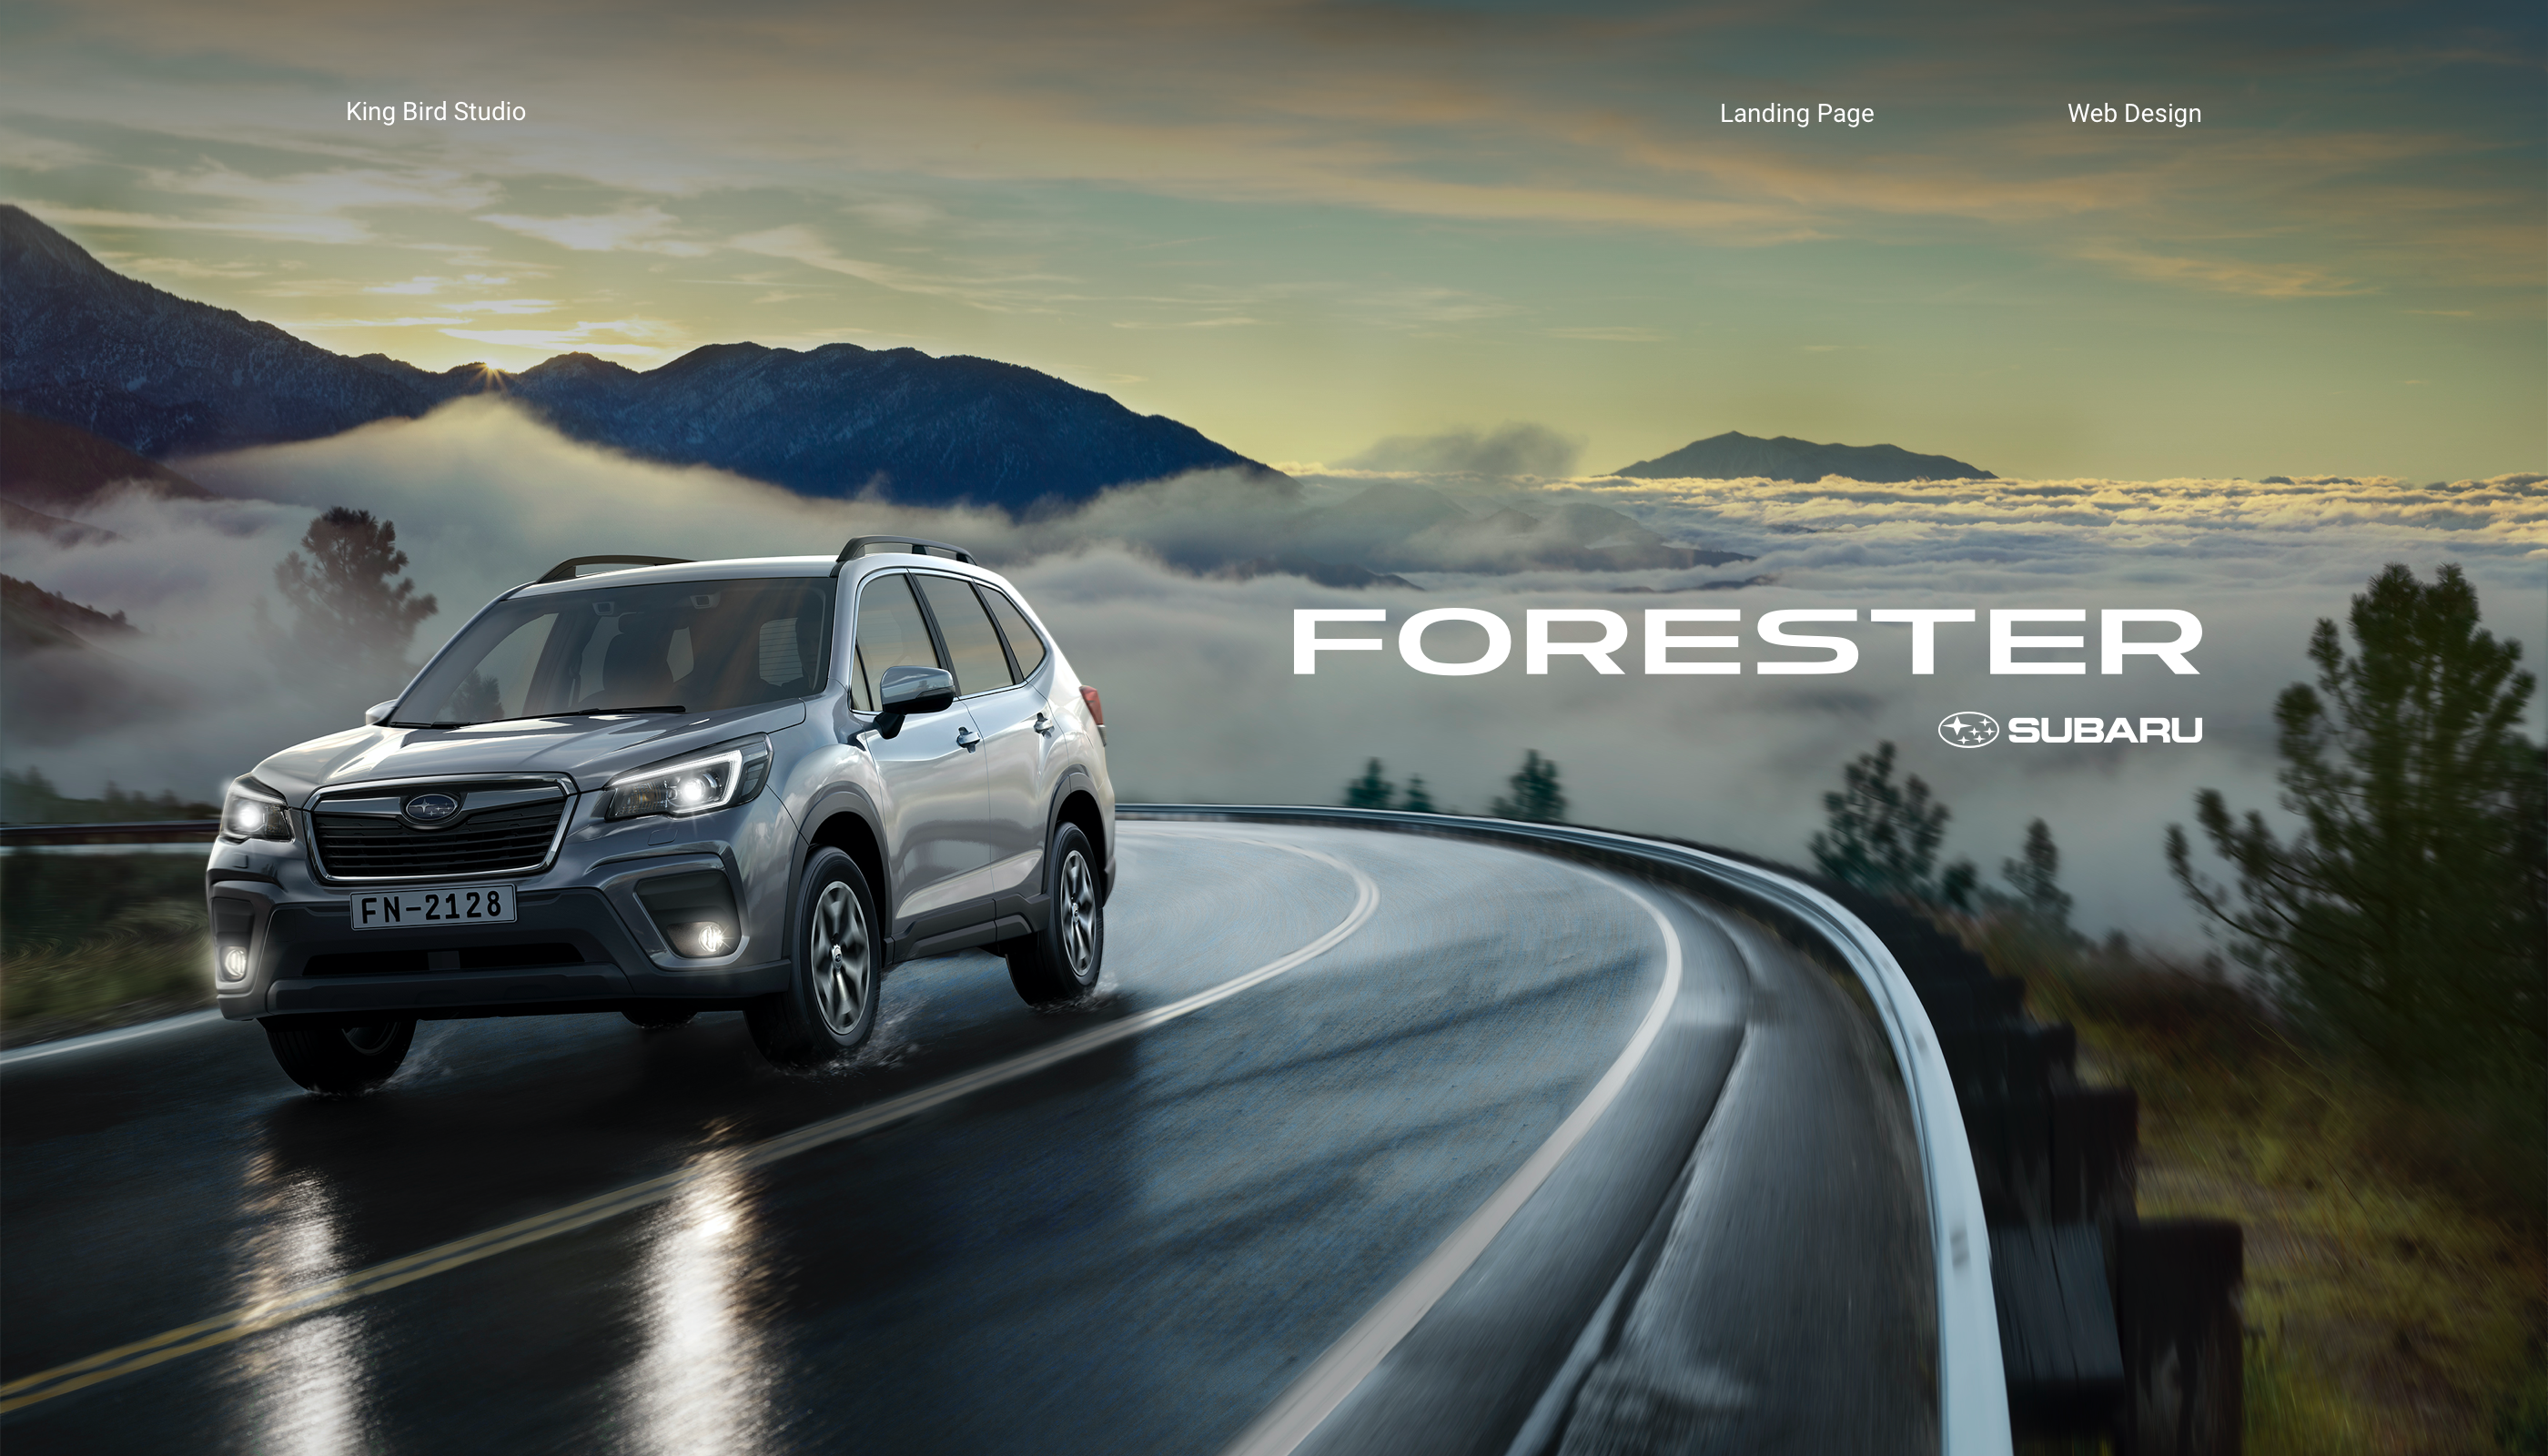 Сайт «Subaru Forester»